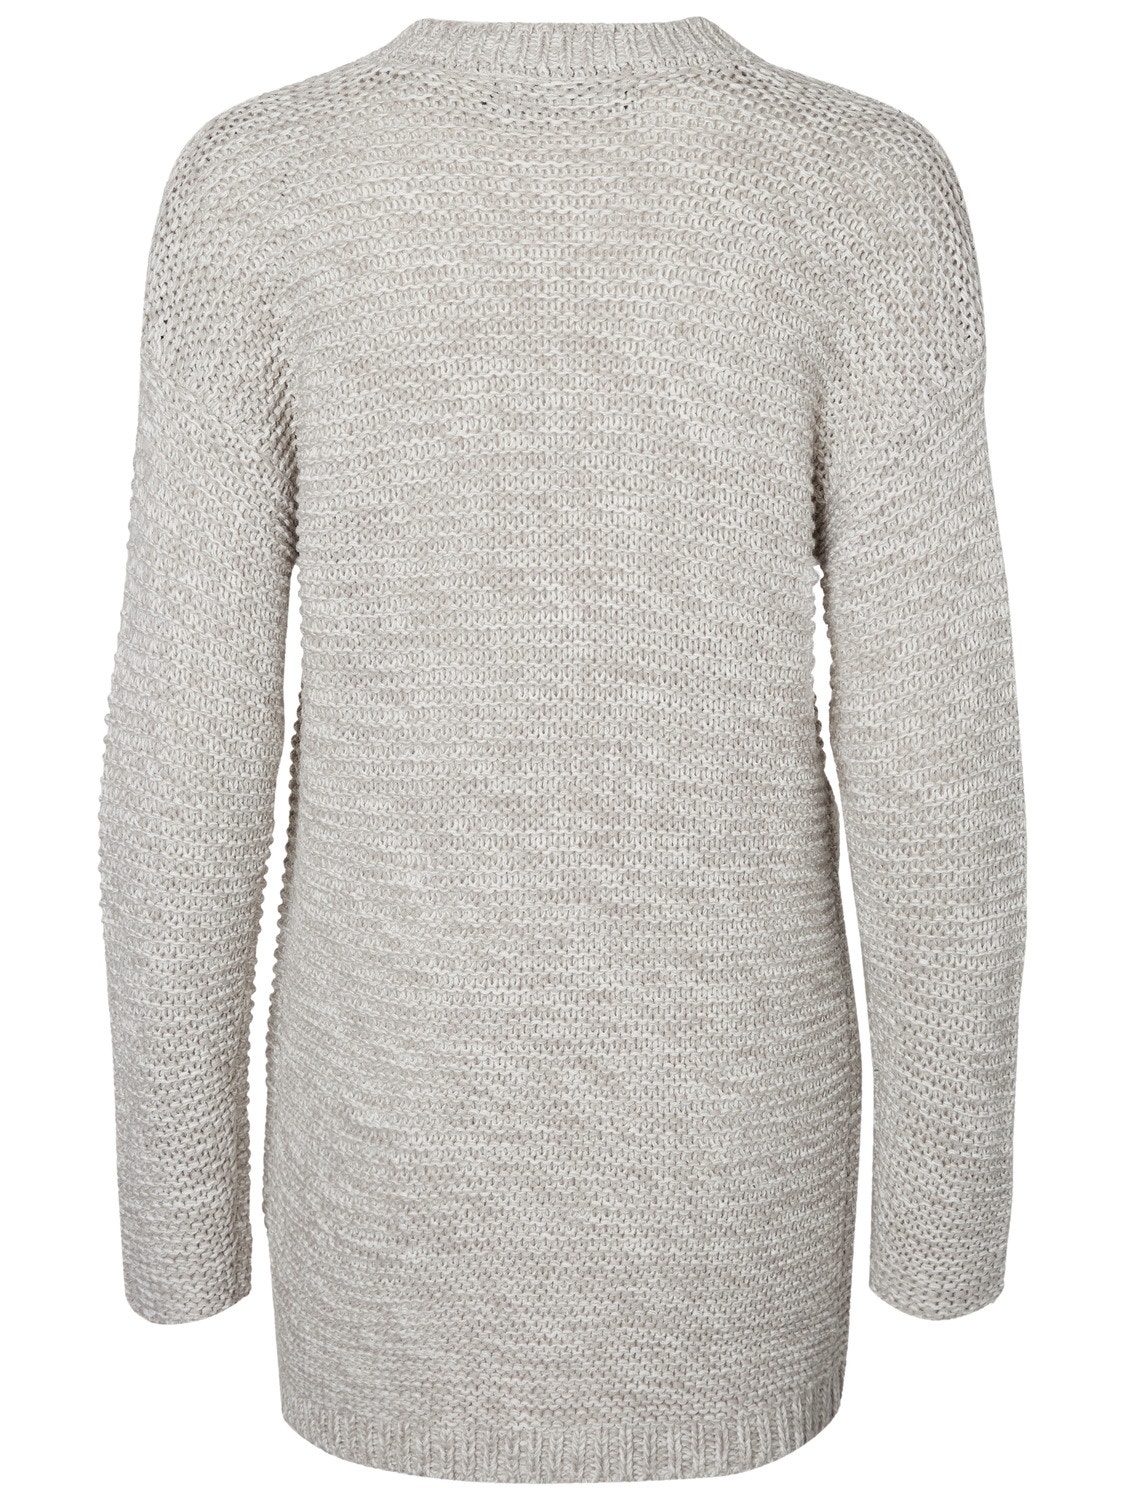 VMNO Knit Cardigan | Light Grey | Vero Moda®